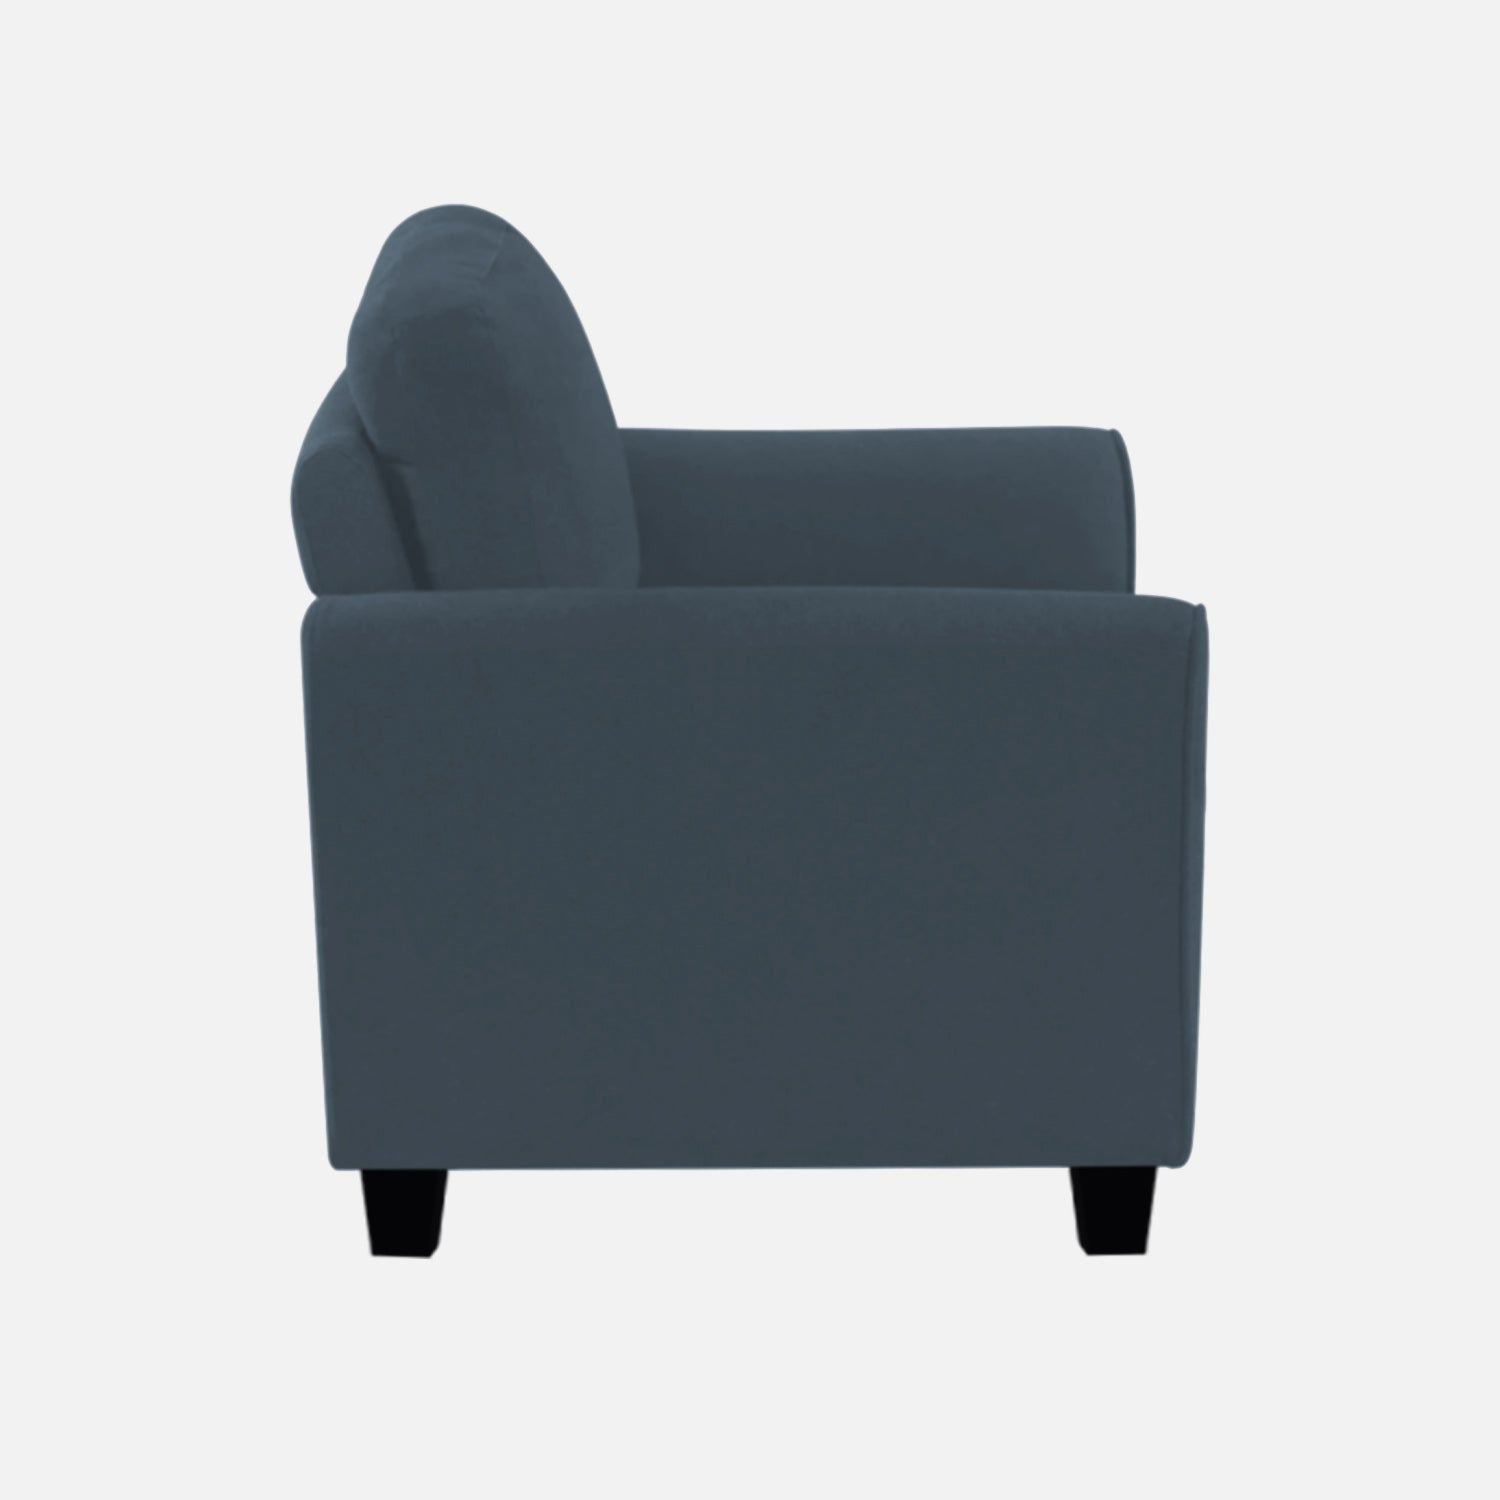 Daroo Velvet 1 Seater Sofa In Oxford Blue Colour